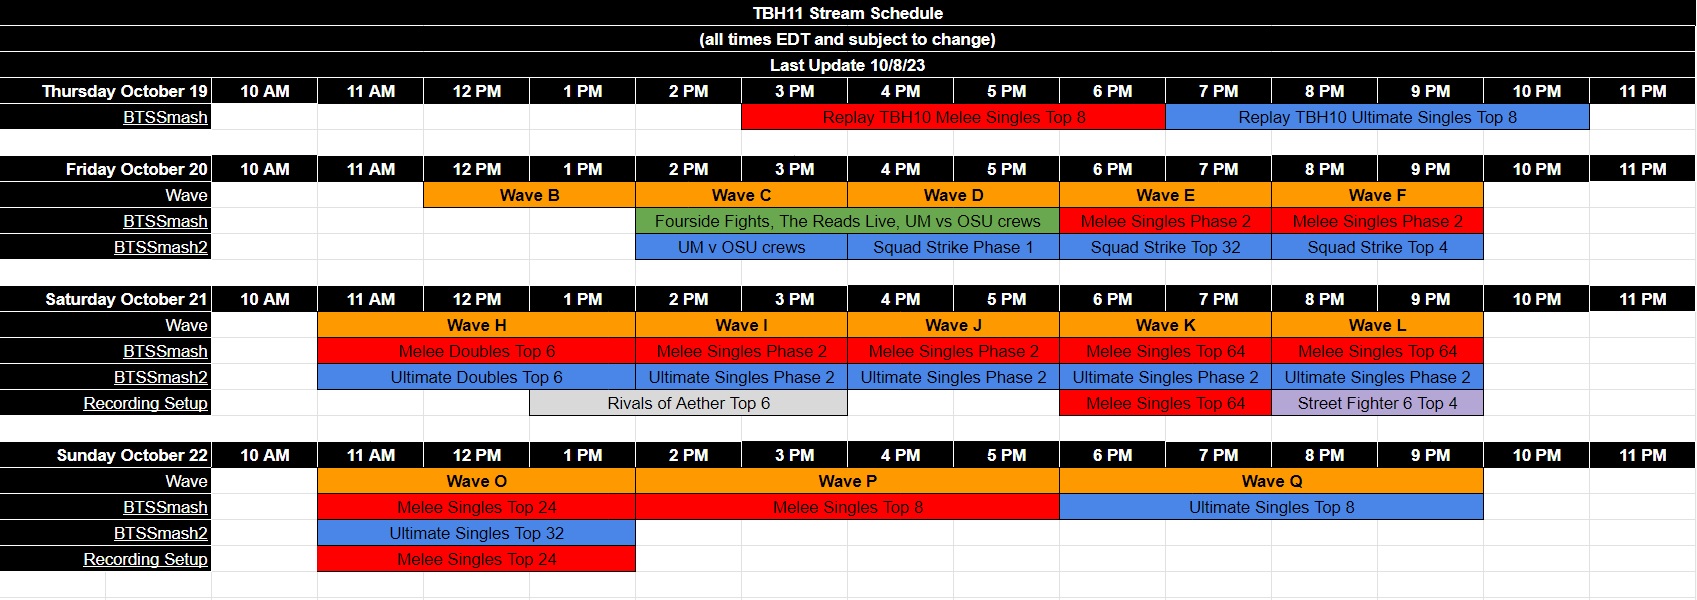 TBH stream schedule